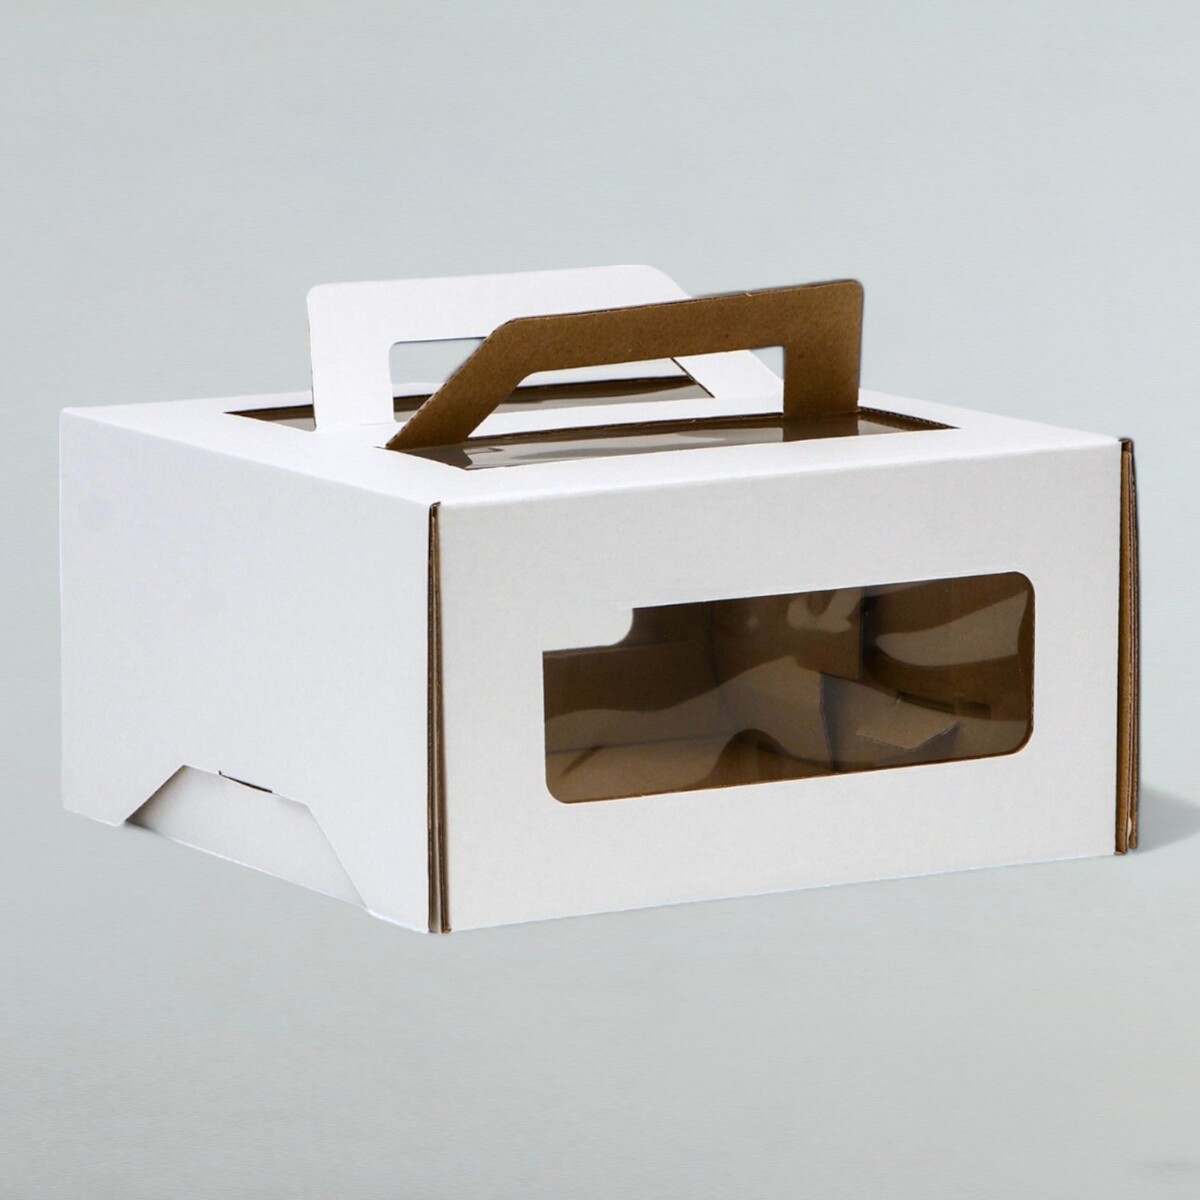 Коробка под торт 2 окна, с ручками, белая, 21 х 21 х 11 см коробка под торт белая 18 х 18 х 10 см